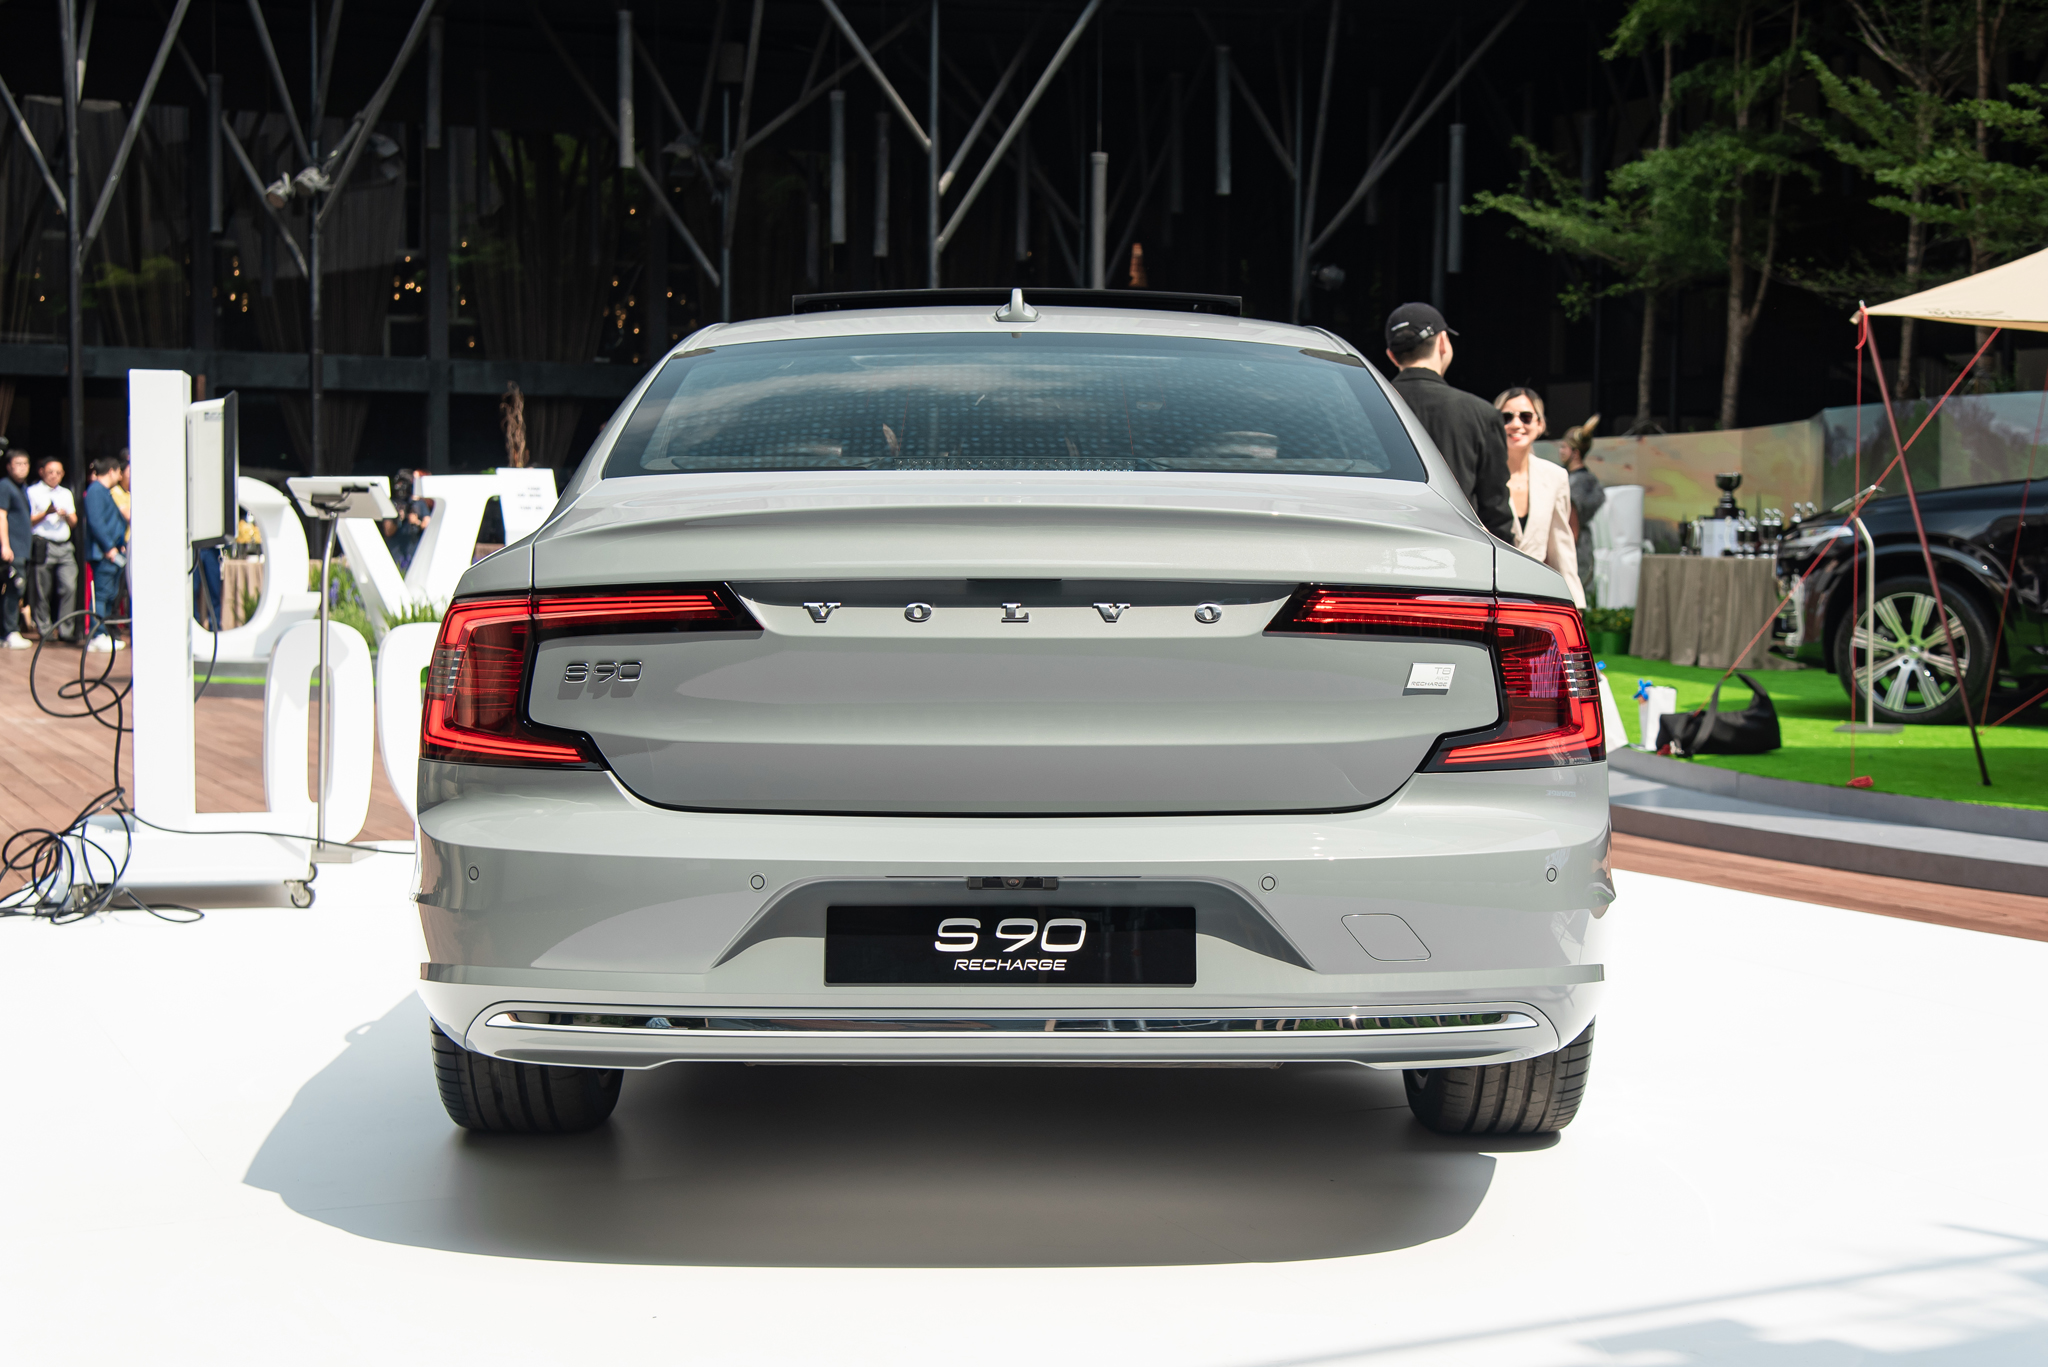 Chi tiết Volvo S90 Recharge vừa ra mắt: Giá 2,89 tỷ đồng, sedan hạng sang cỡ trung rộng và mạnh nhất Việt Nam - Ảnh 11.